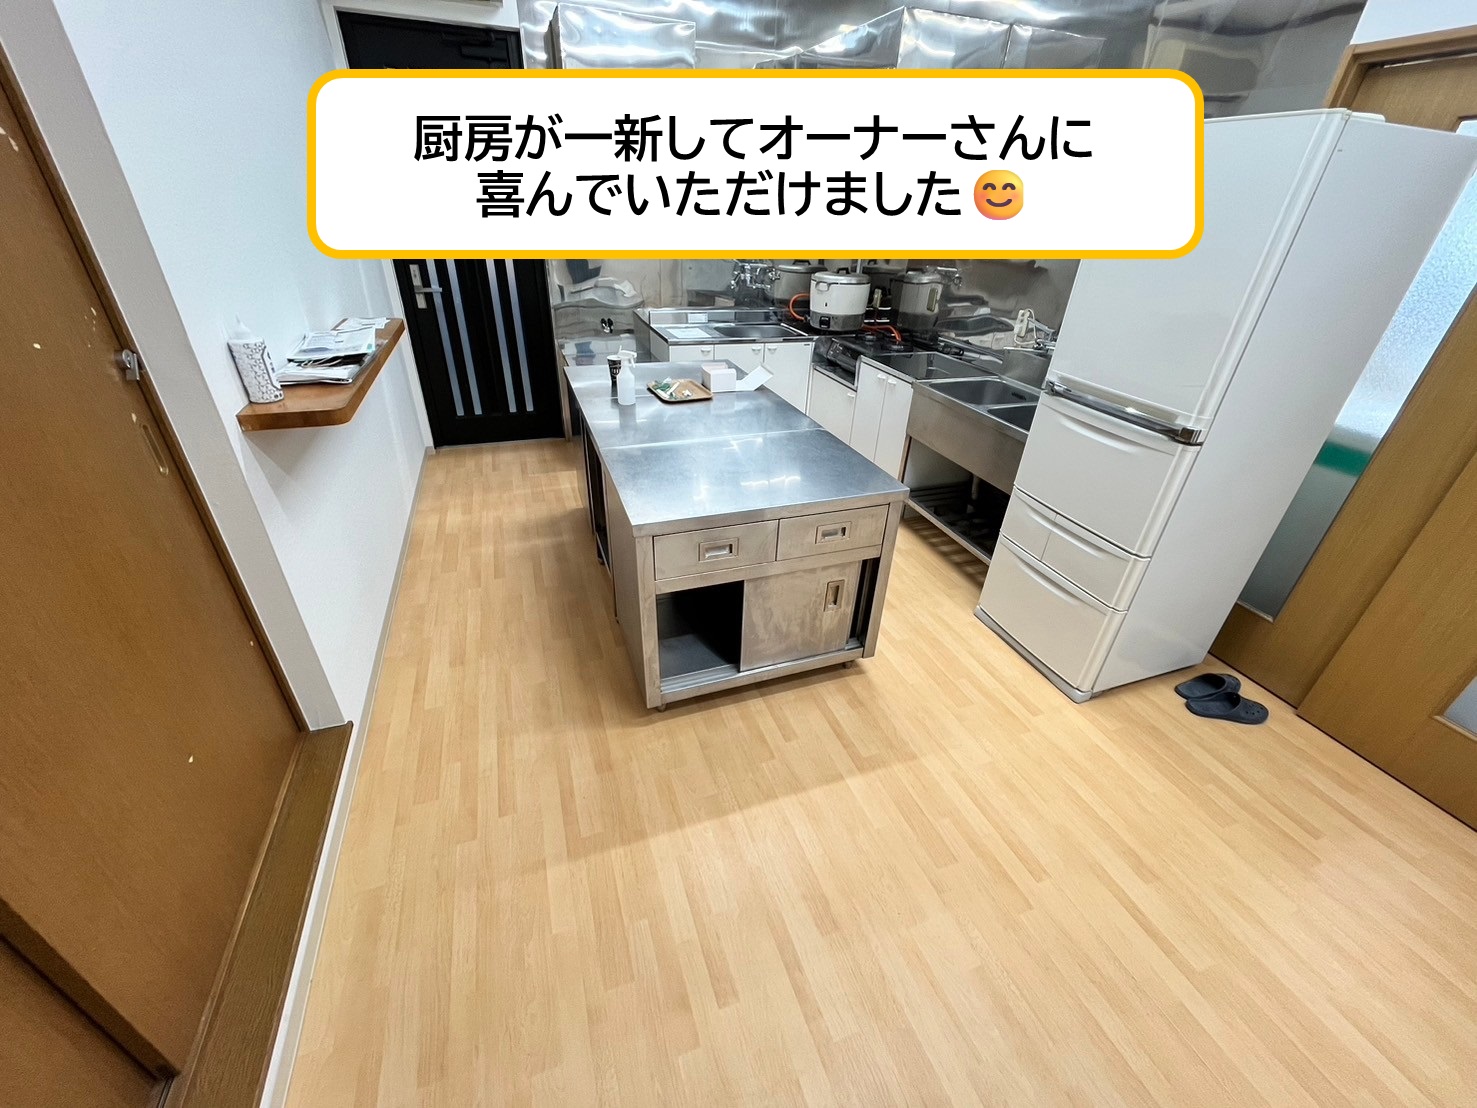 厨房改装リフォーム@浜松市中央区某店